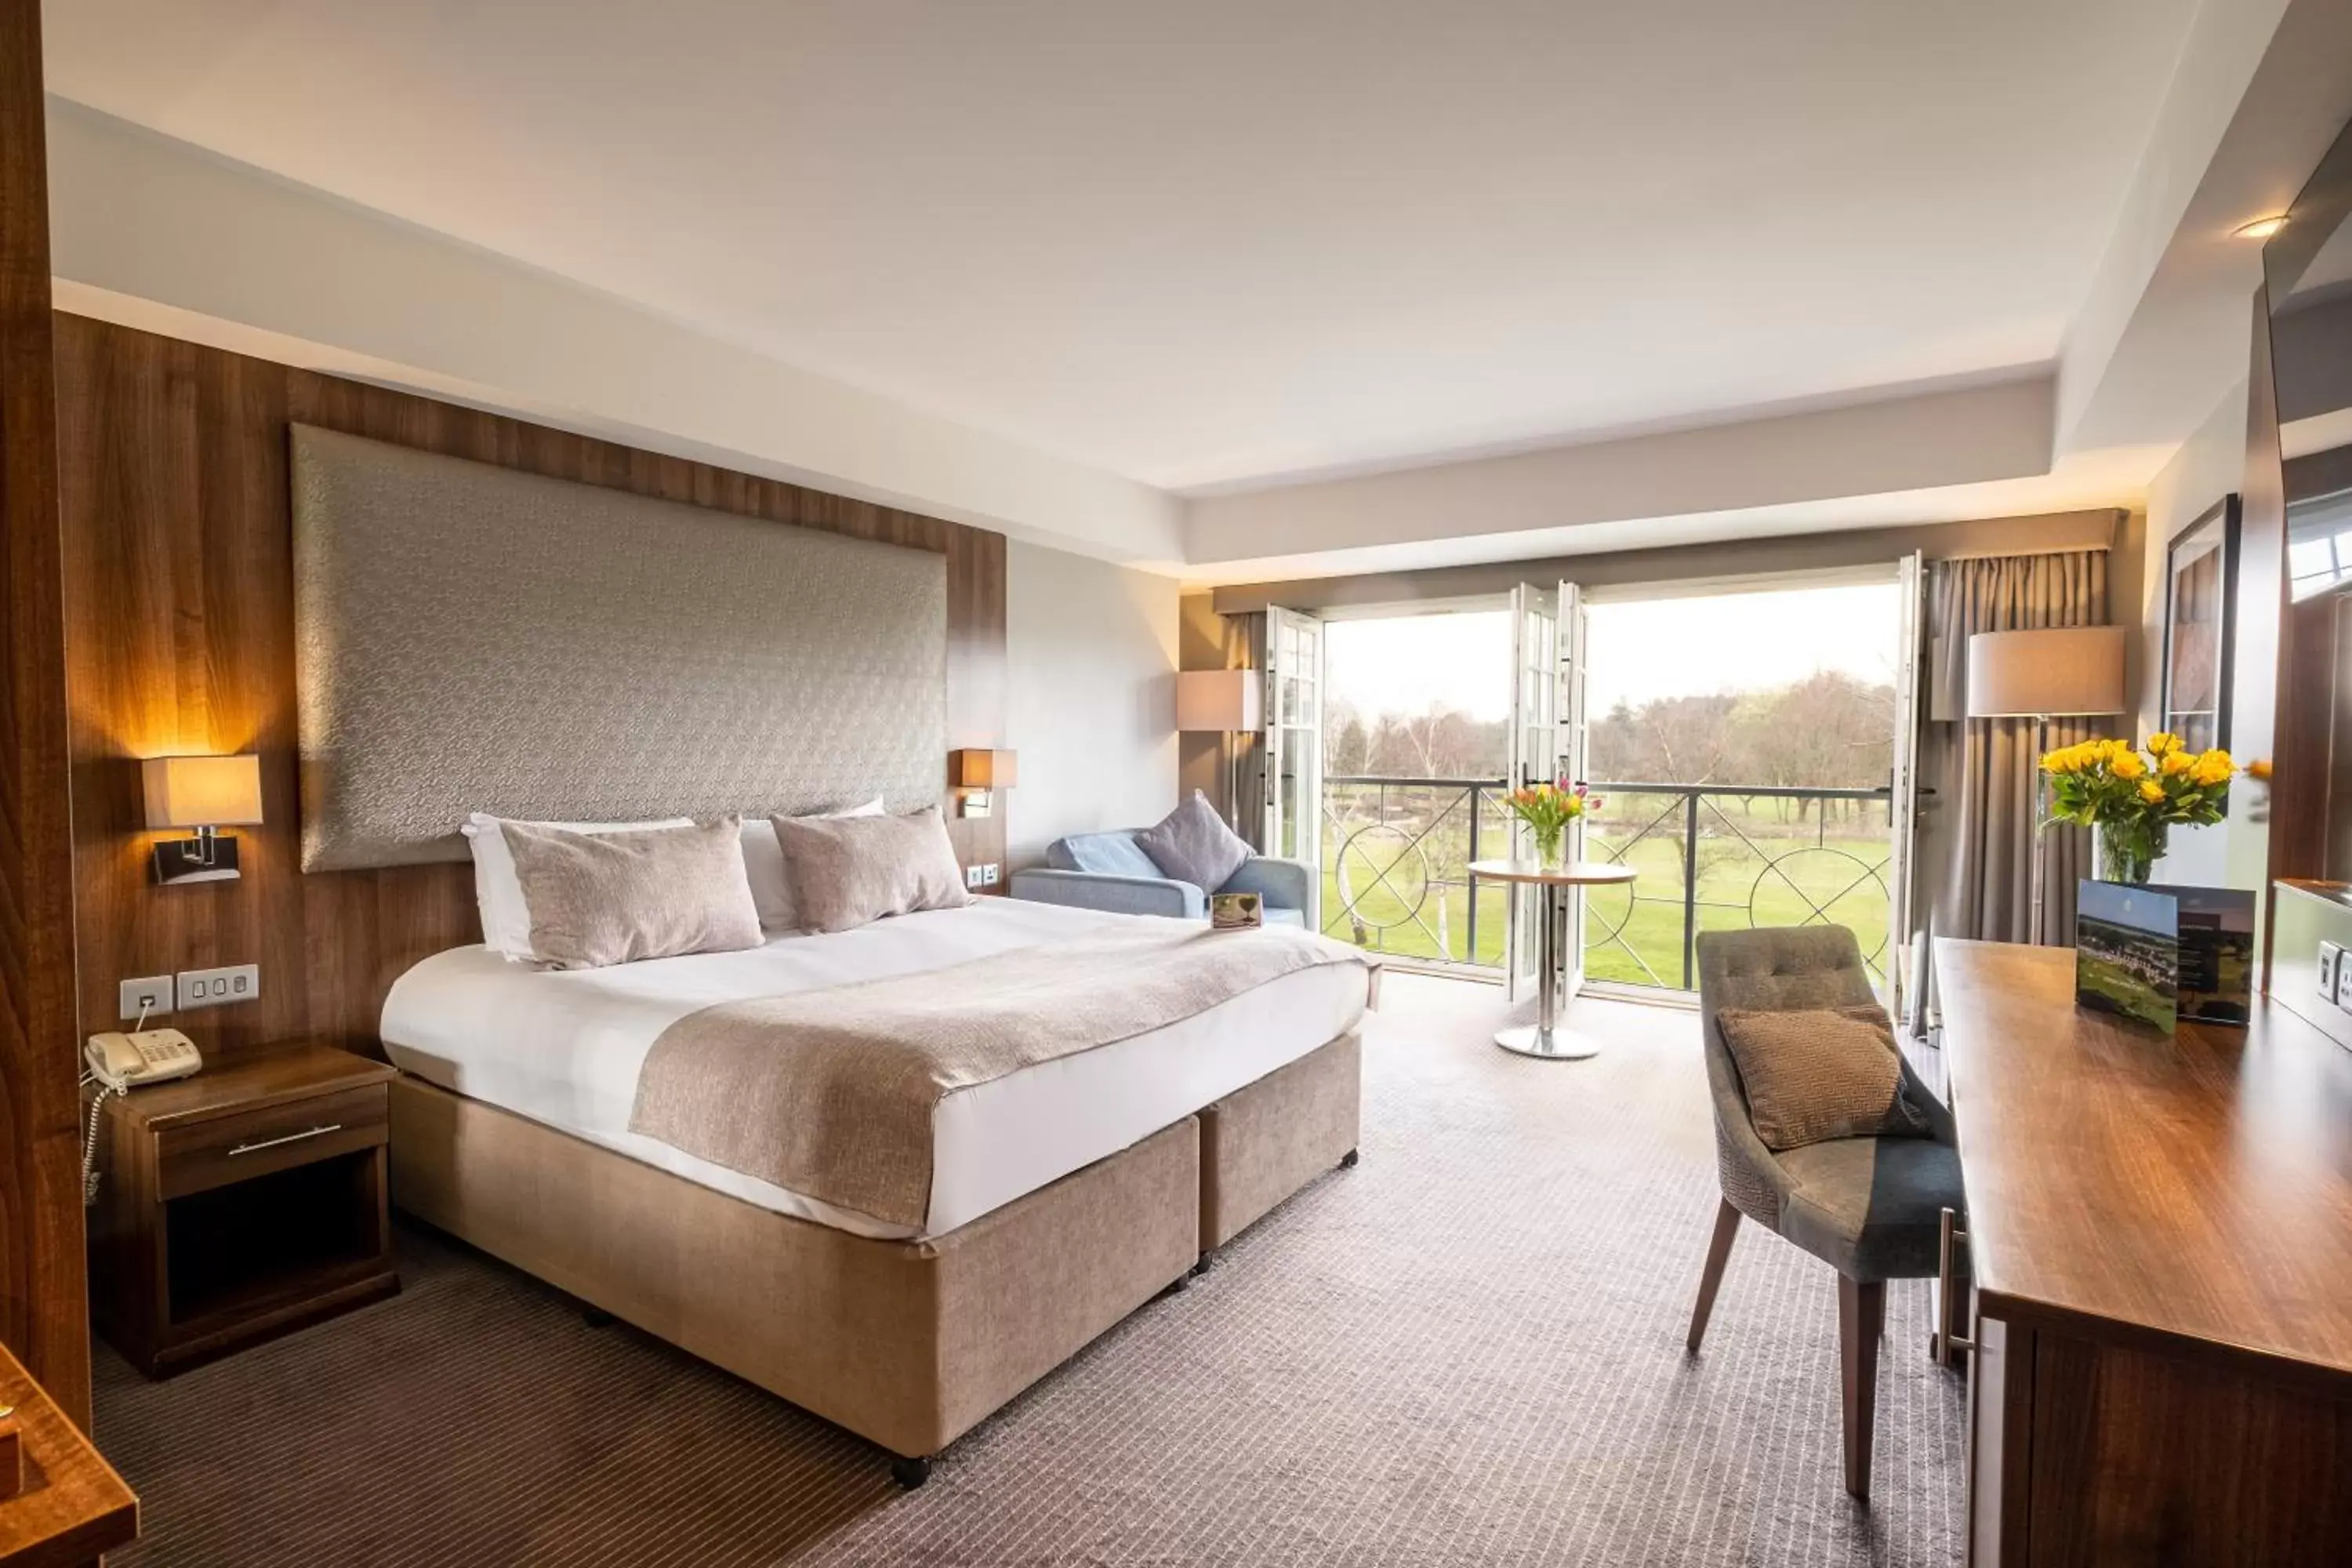 Bedroom in Formby Hall Golf Resort & Spa